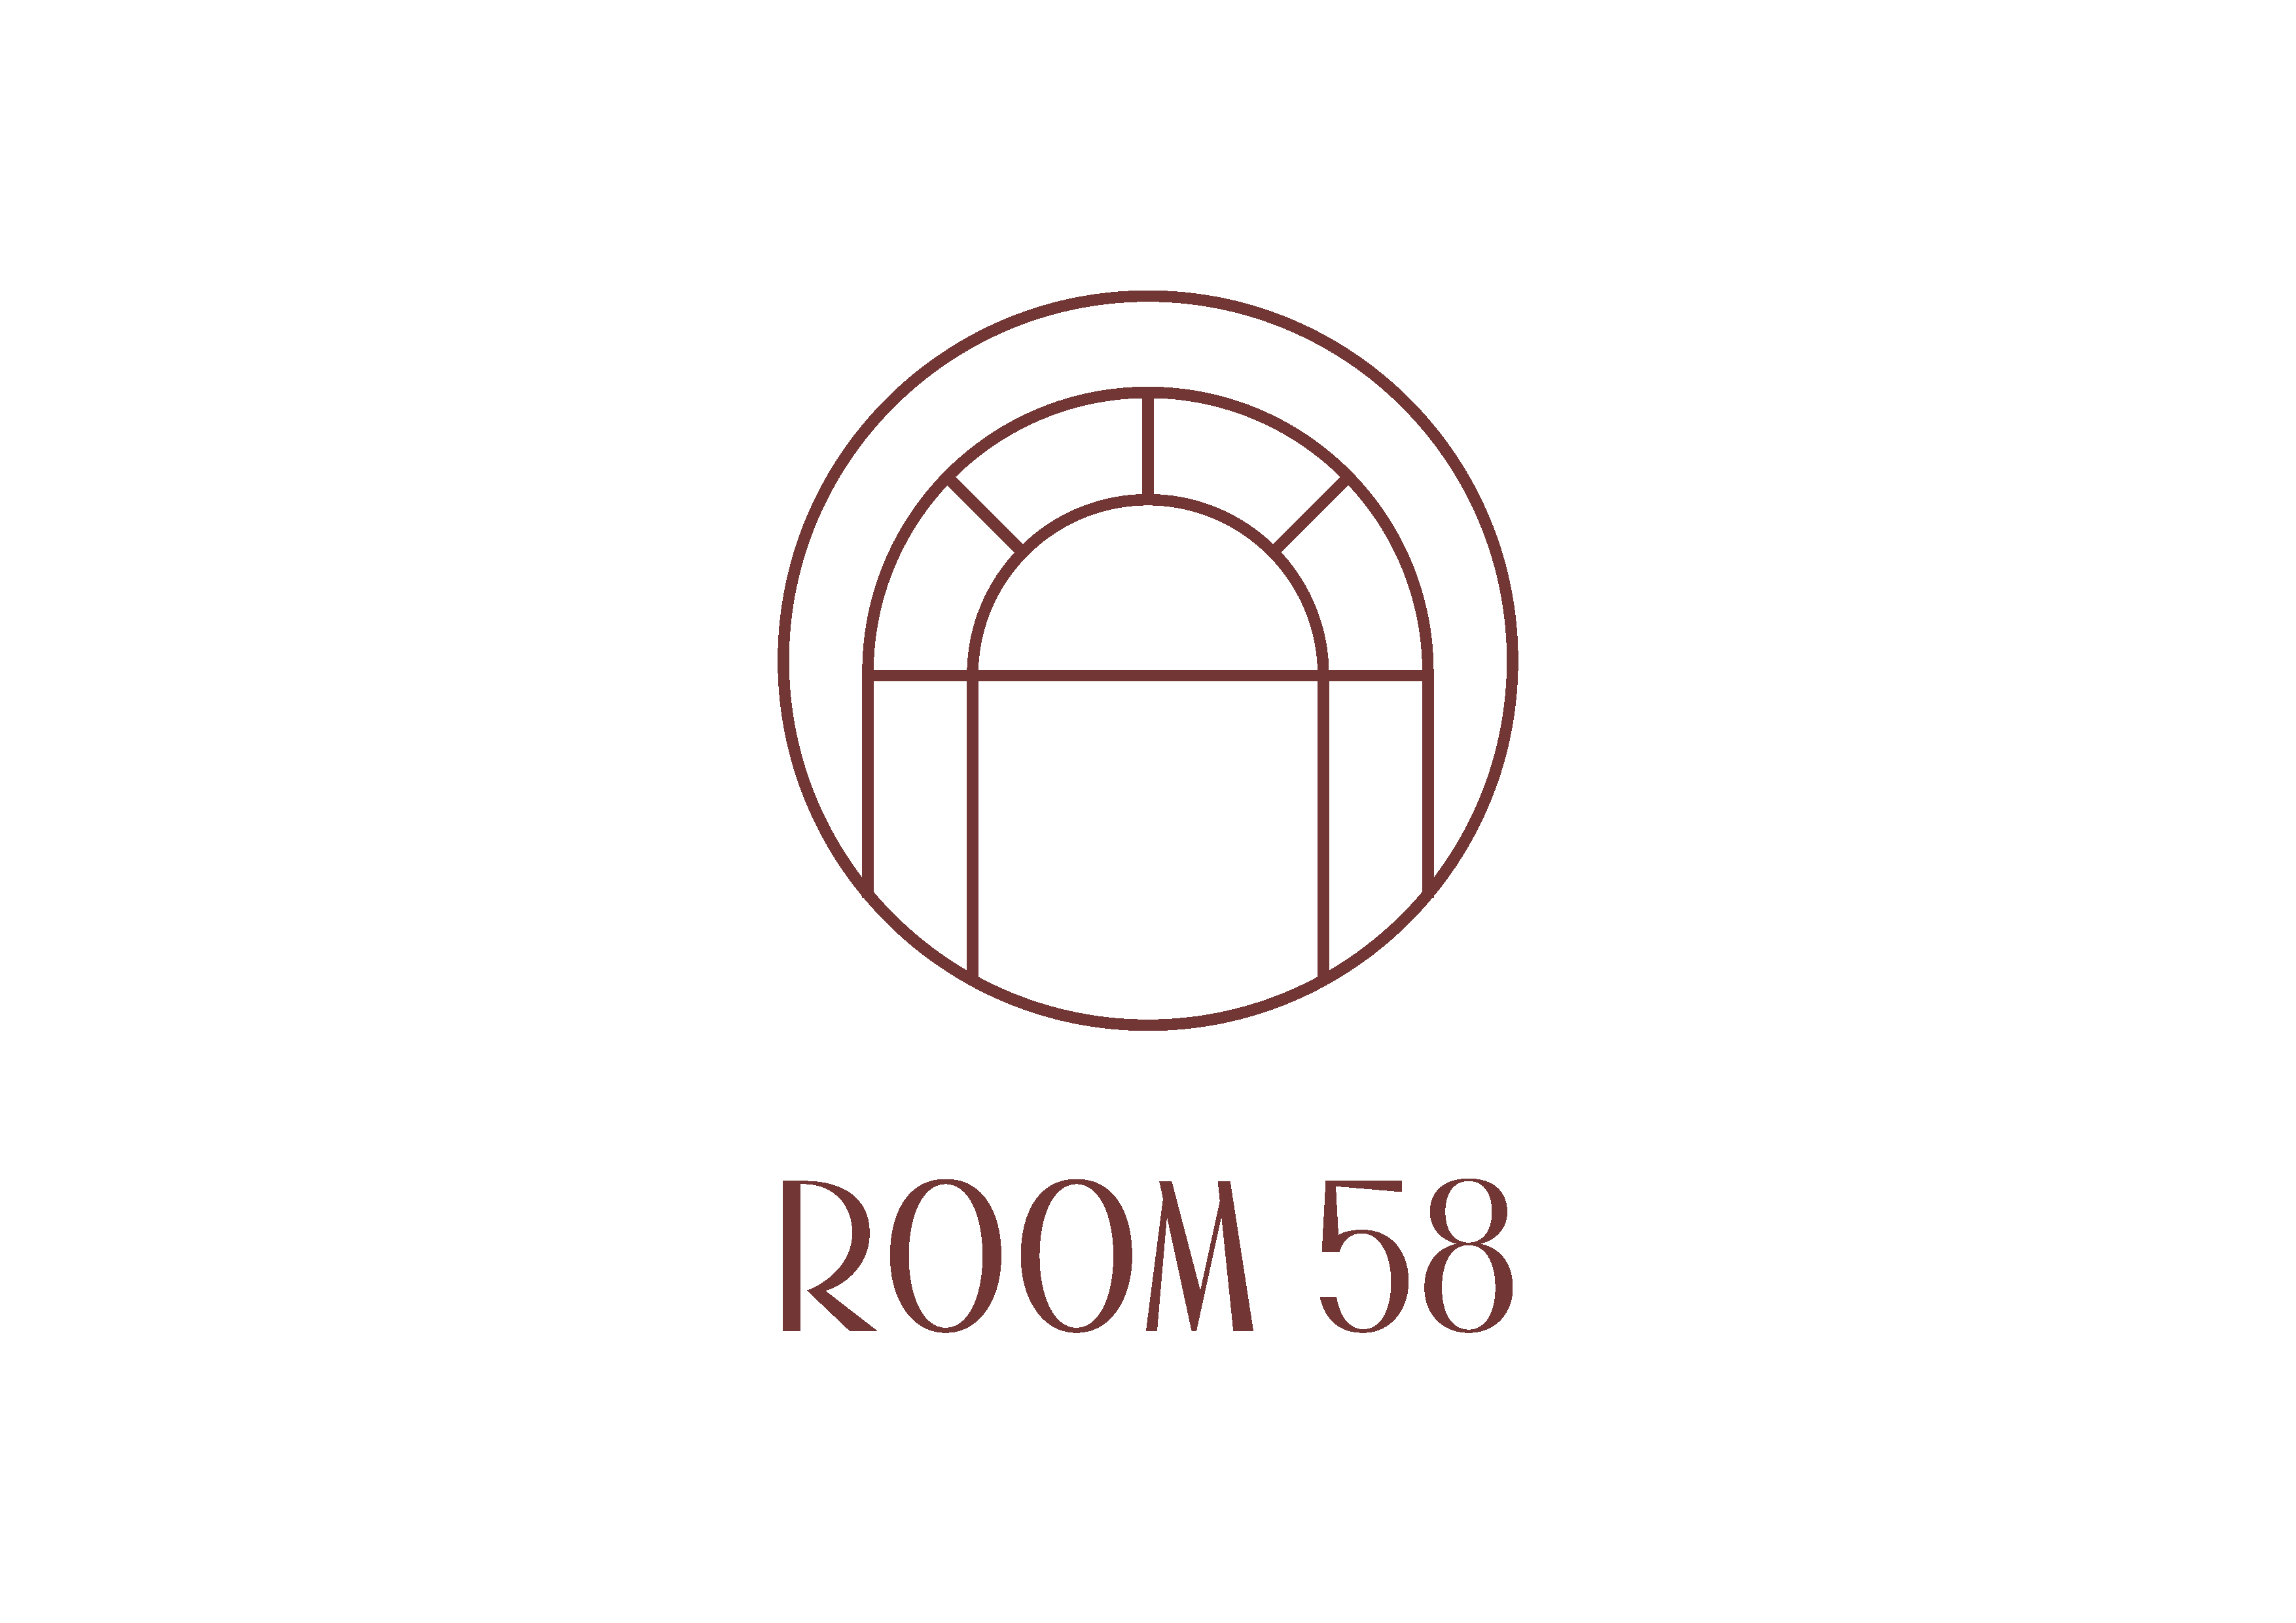 Room 58